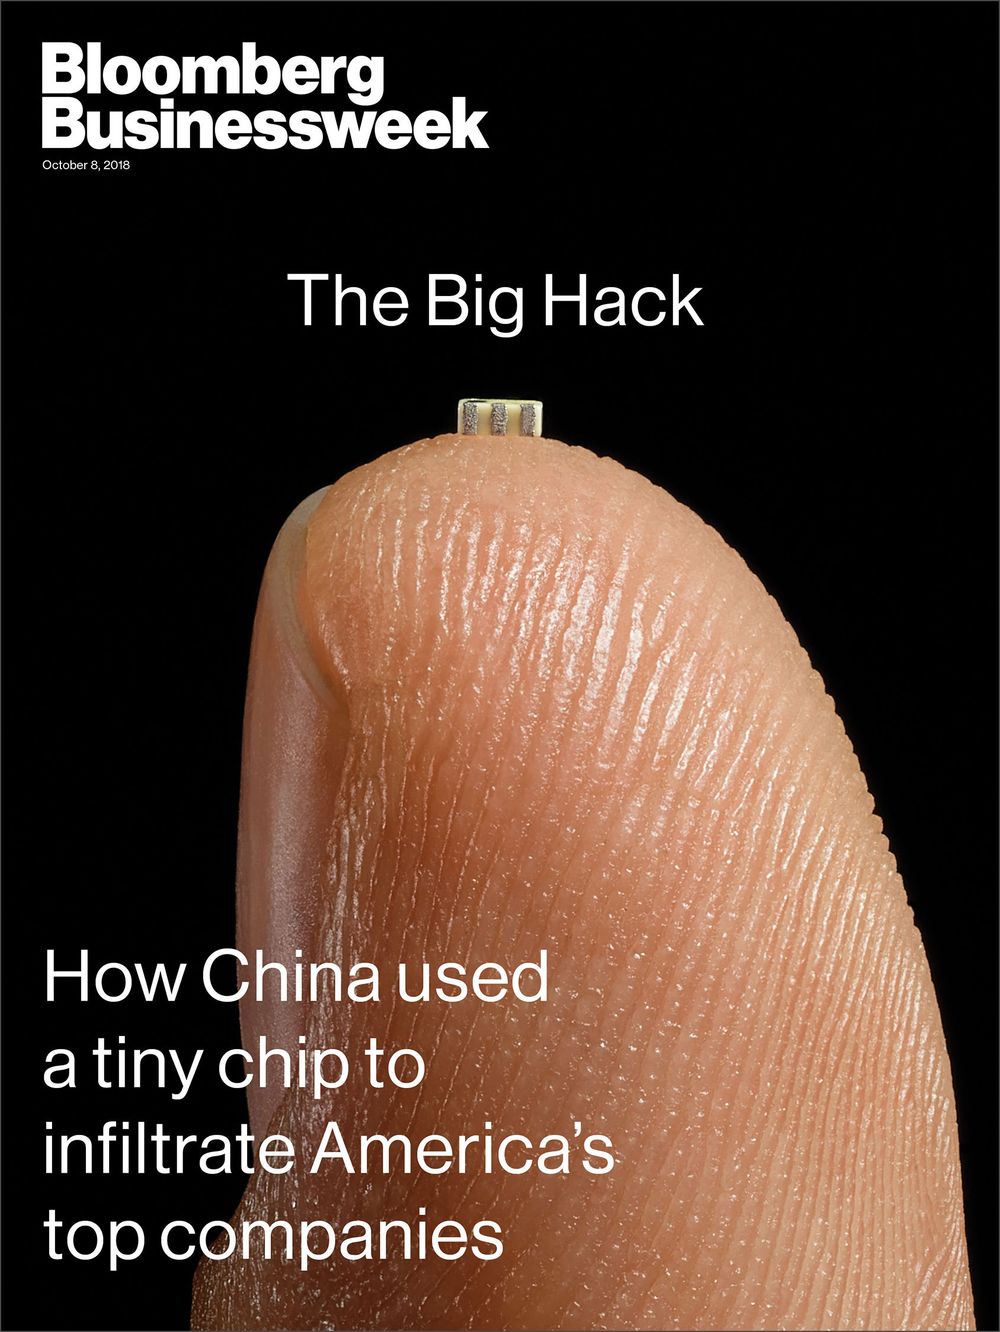 Artículo de Bloomberg sobre el supuesto ataque de China a empresas tecnológicas de EEUU